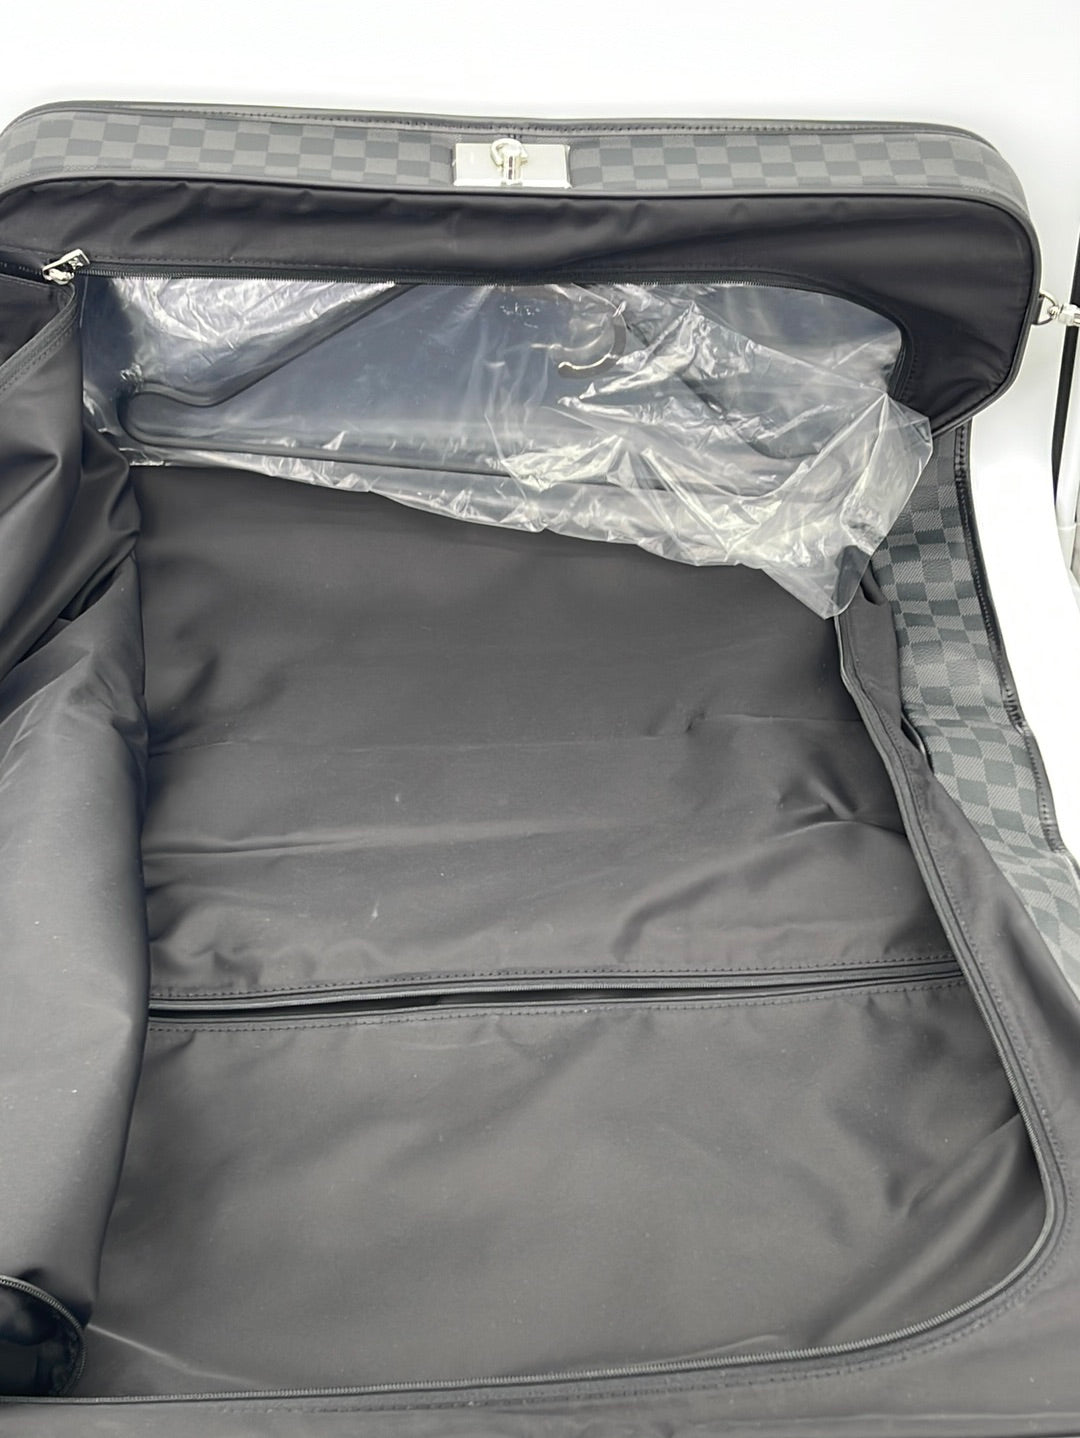 LOUIS VUITTON Carry Bag N23206 Pilot case Damier Grafitto Canvas Black –